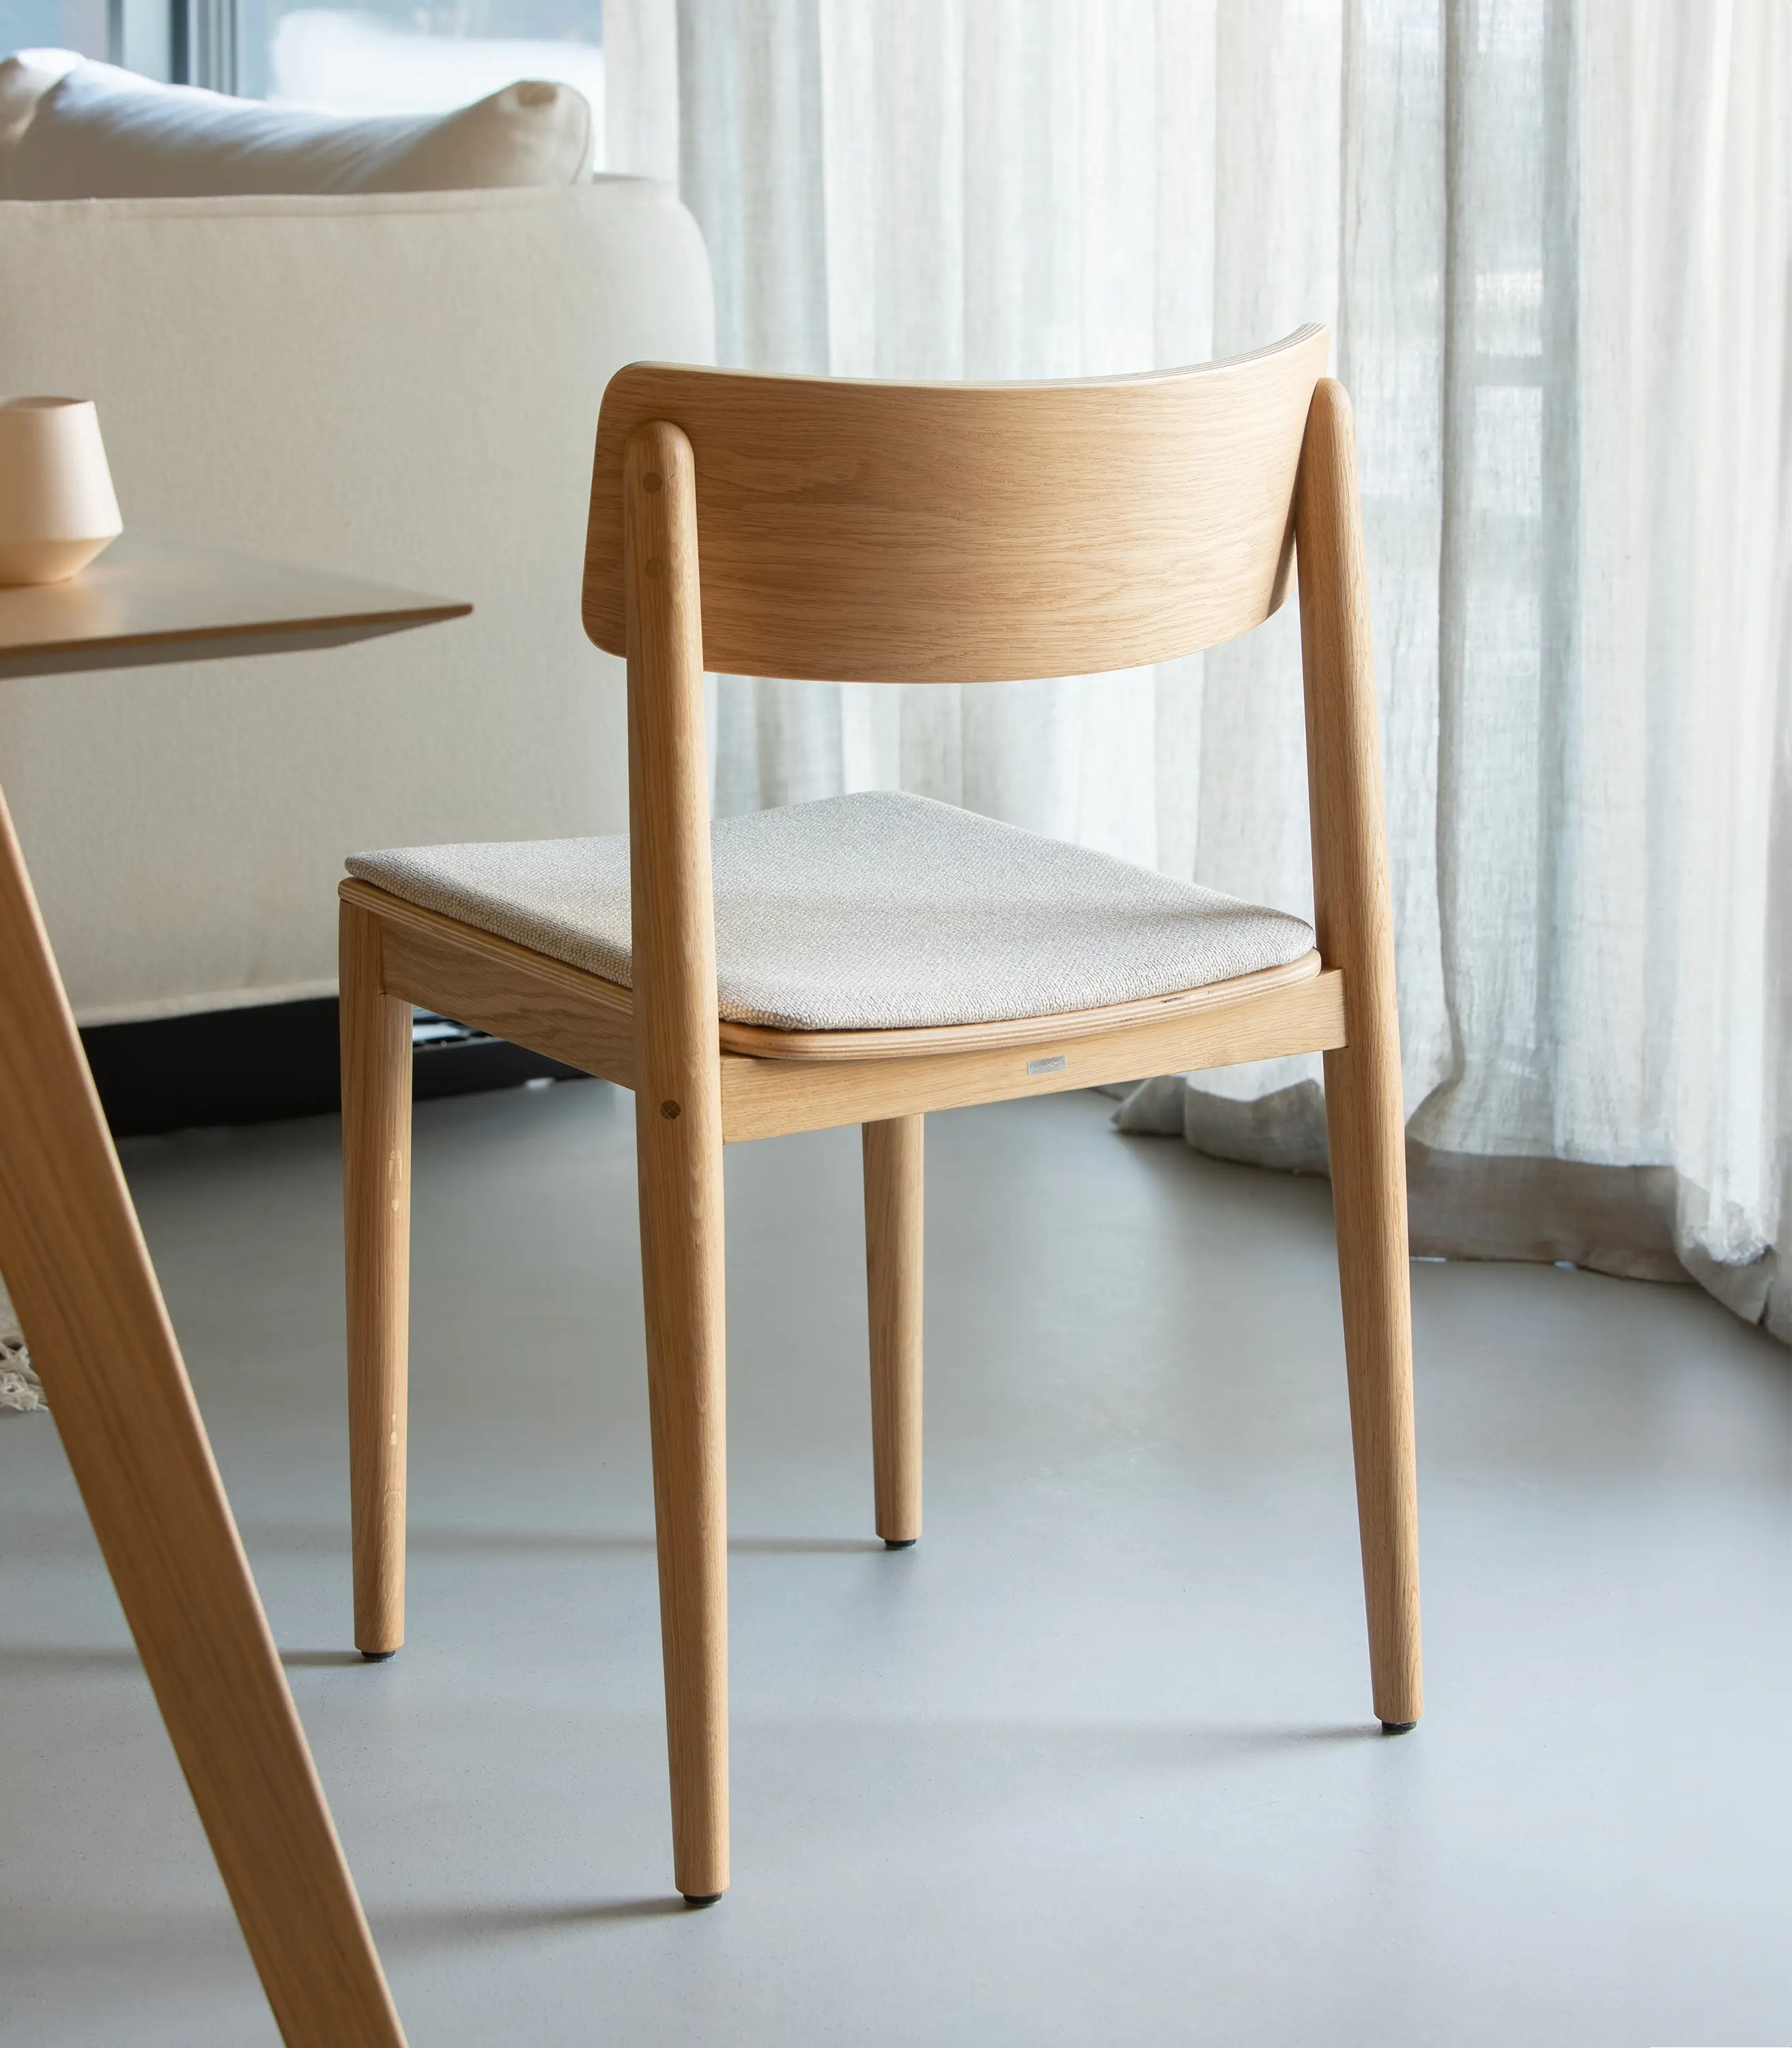 krzesło dębowe drewniane klasyczne tapicerka jasna